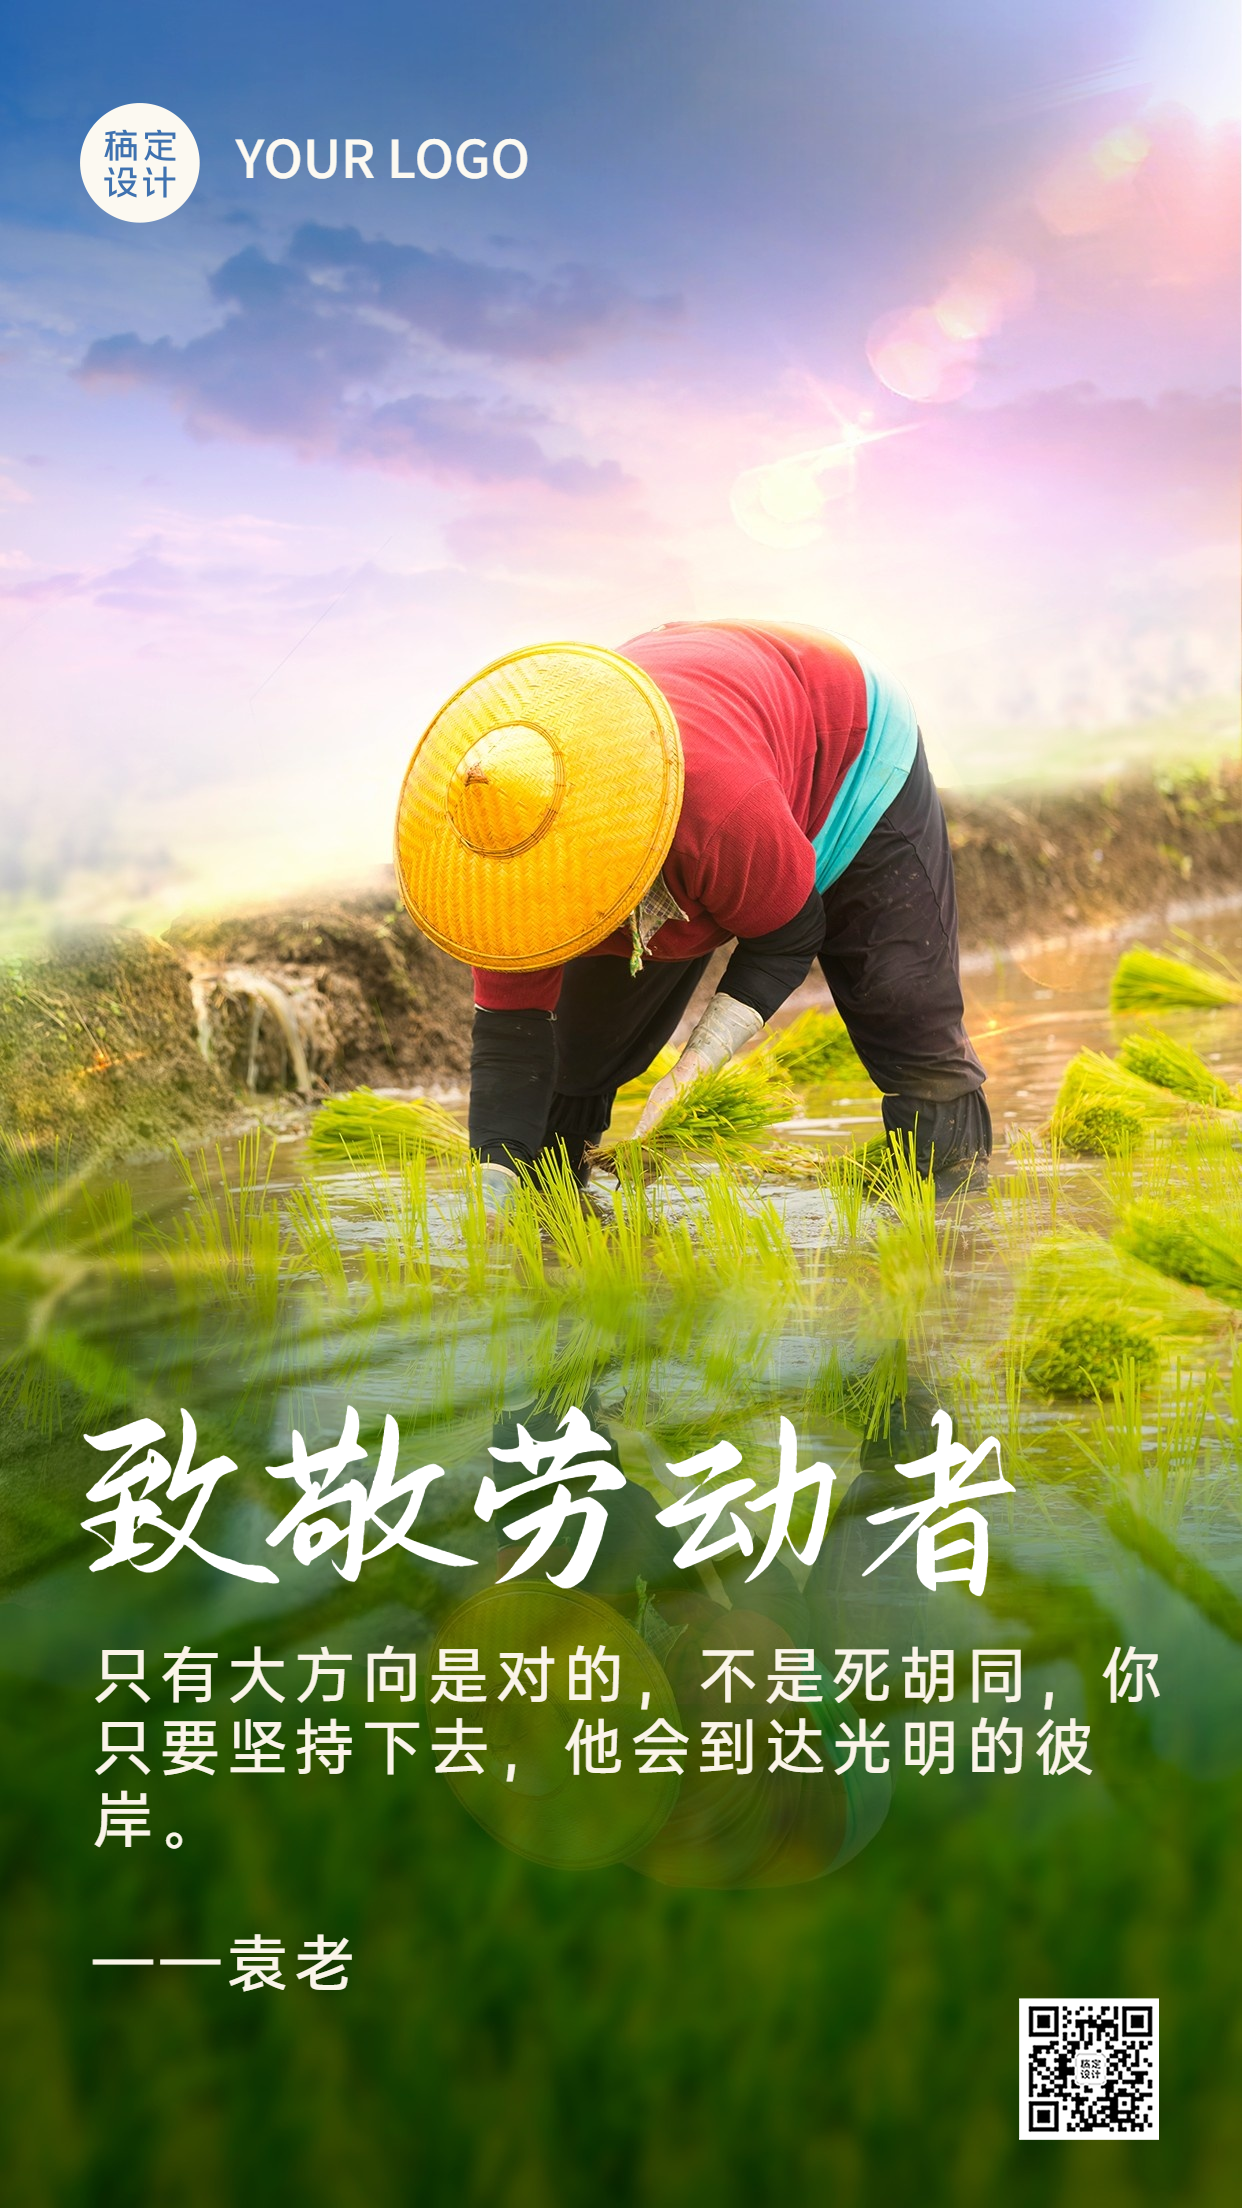 水稻农耕丰收致敬劳动者手机海报